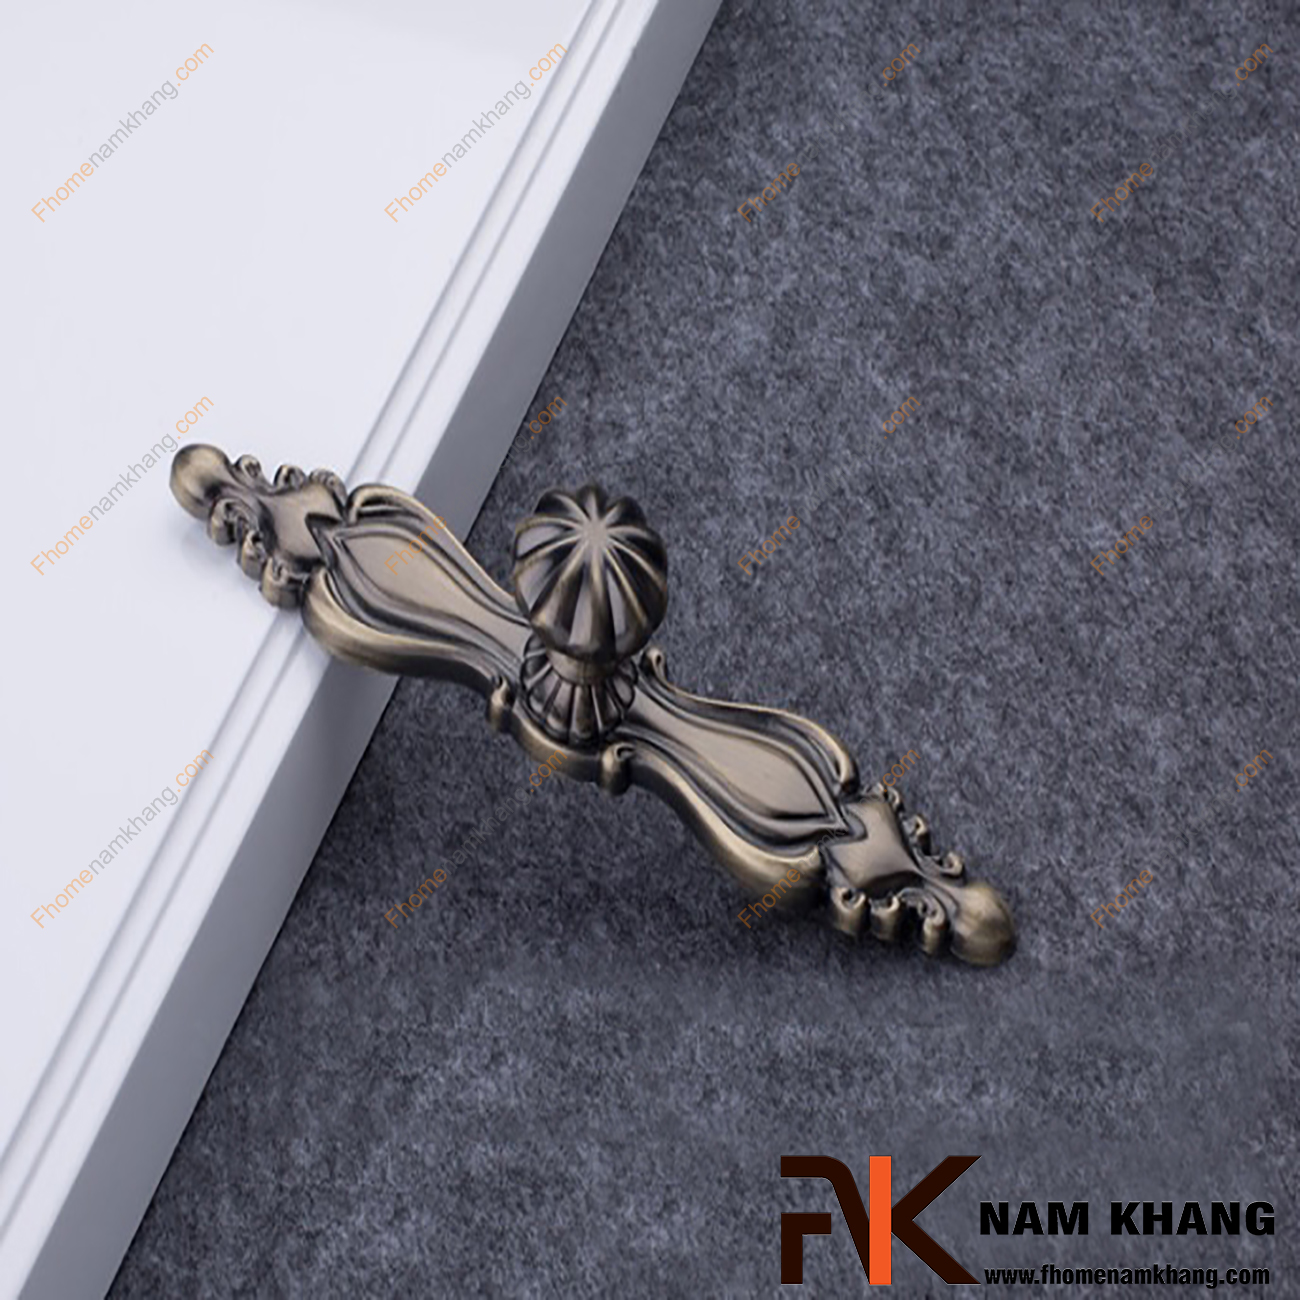 Núm nắm cửa tủ dạng thanh NK229-R có thiết kế kết hợp núm nắm tủ đầu tròn mạ đồng cổ và thanh cố định chất lượng cao. Đây là sản phẩm trang trí cao cấp thể hiện sự sang trọng và tinh tế.